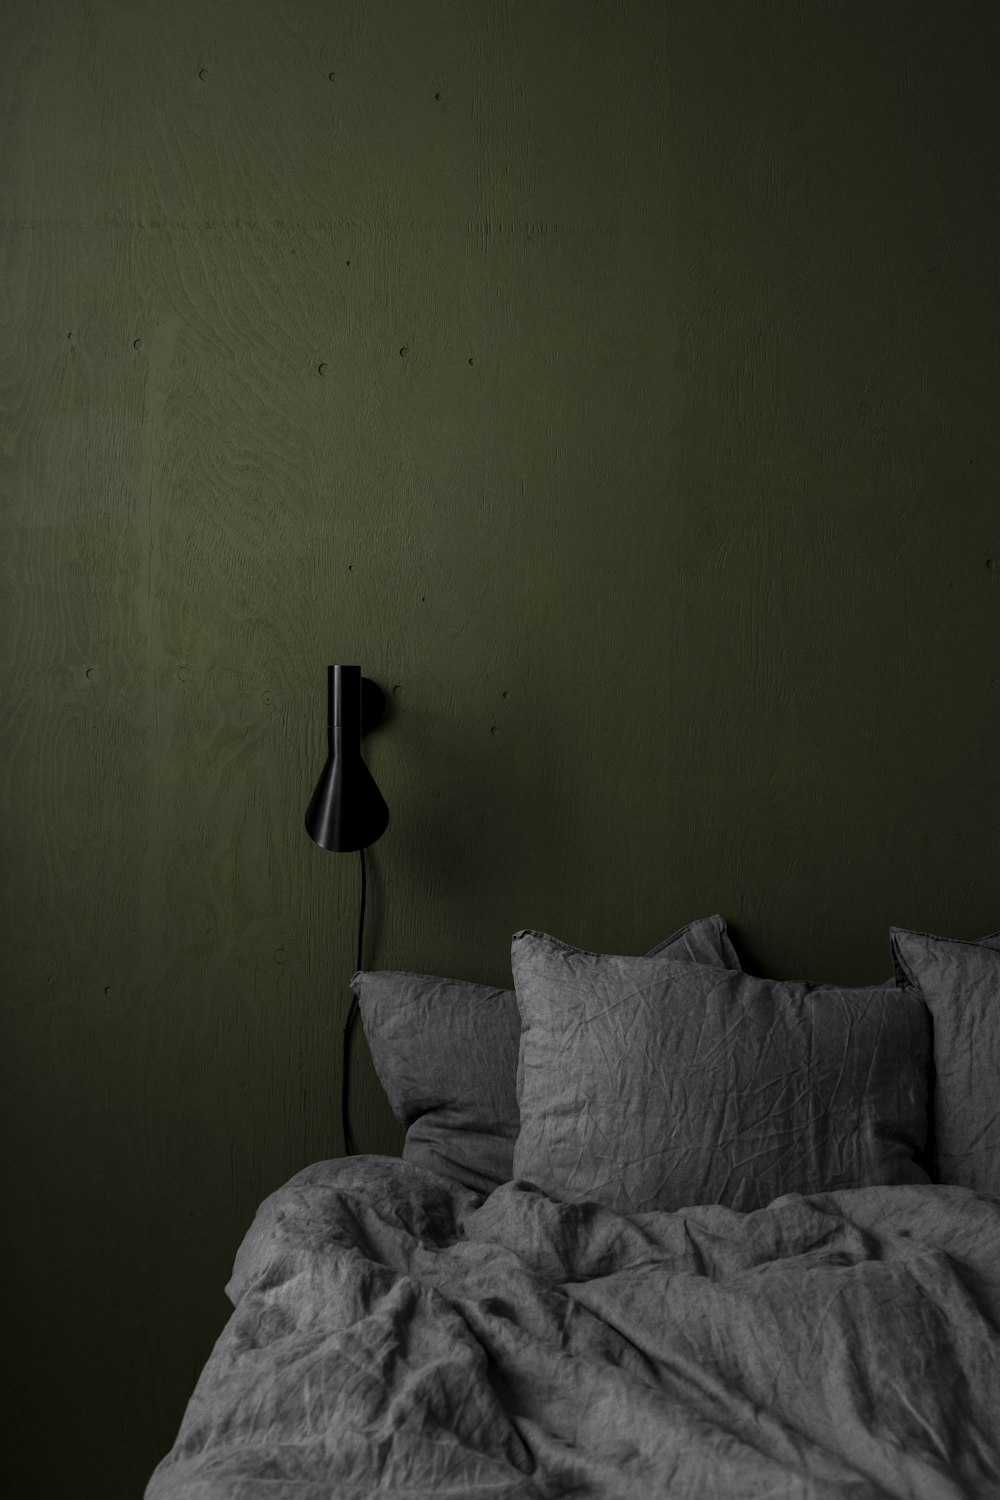 Una foto in bianco e nero di un letto in una stanza buia